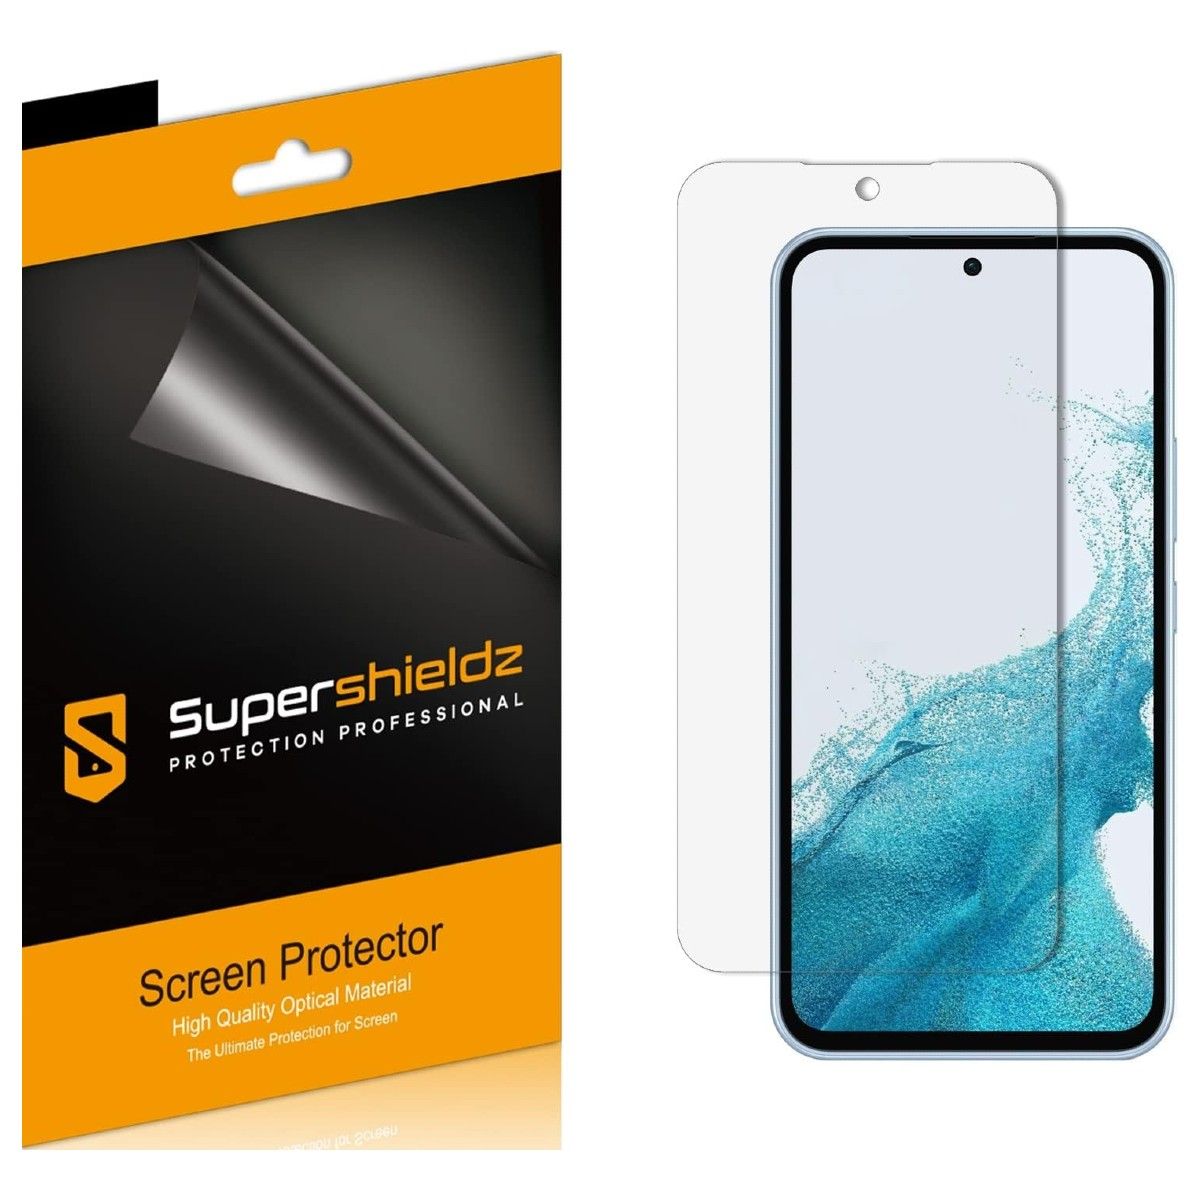 Um pacote de protetor de tela Supershieldz PET e um protetor de tela flutuando acima da tela do telefone